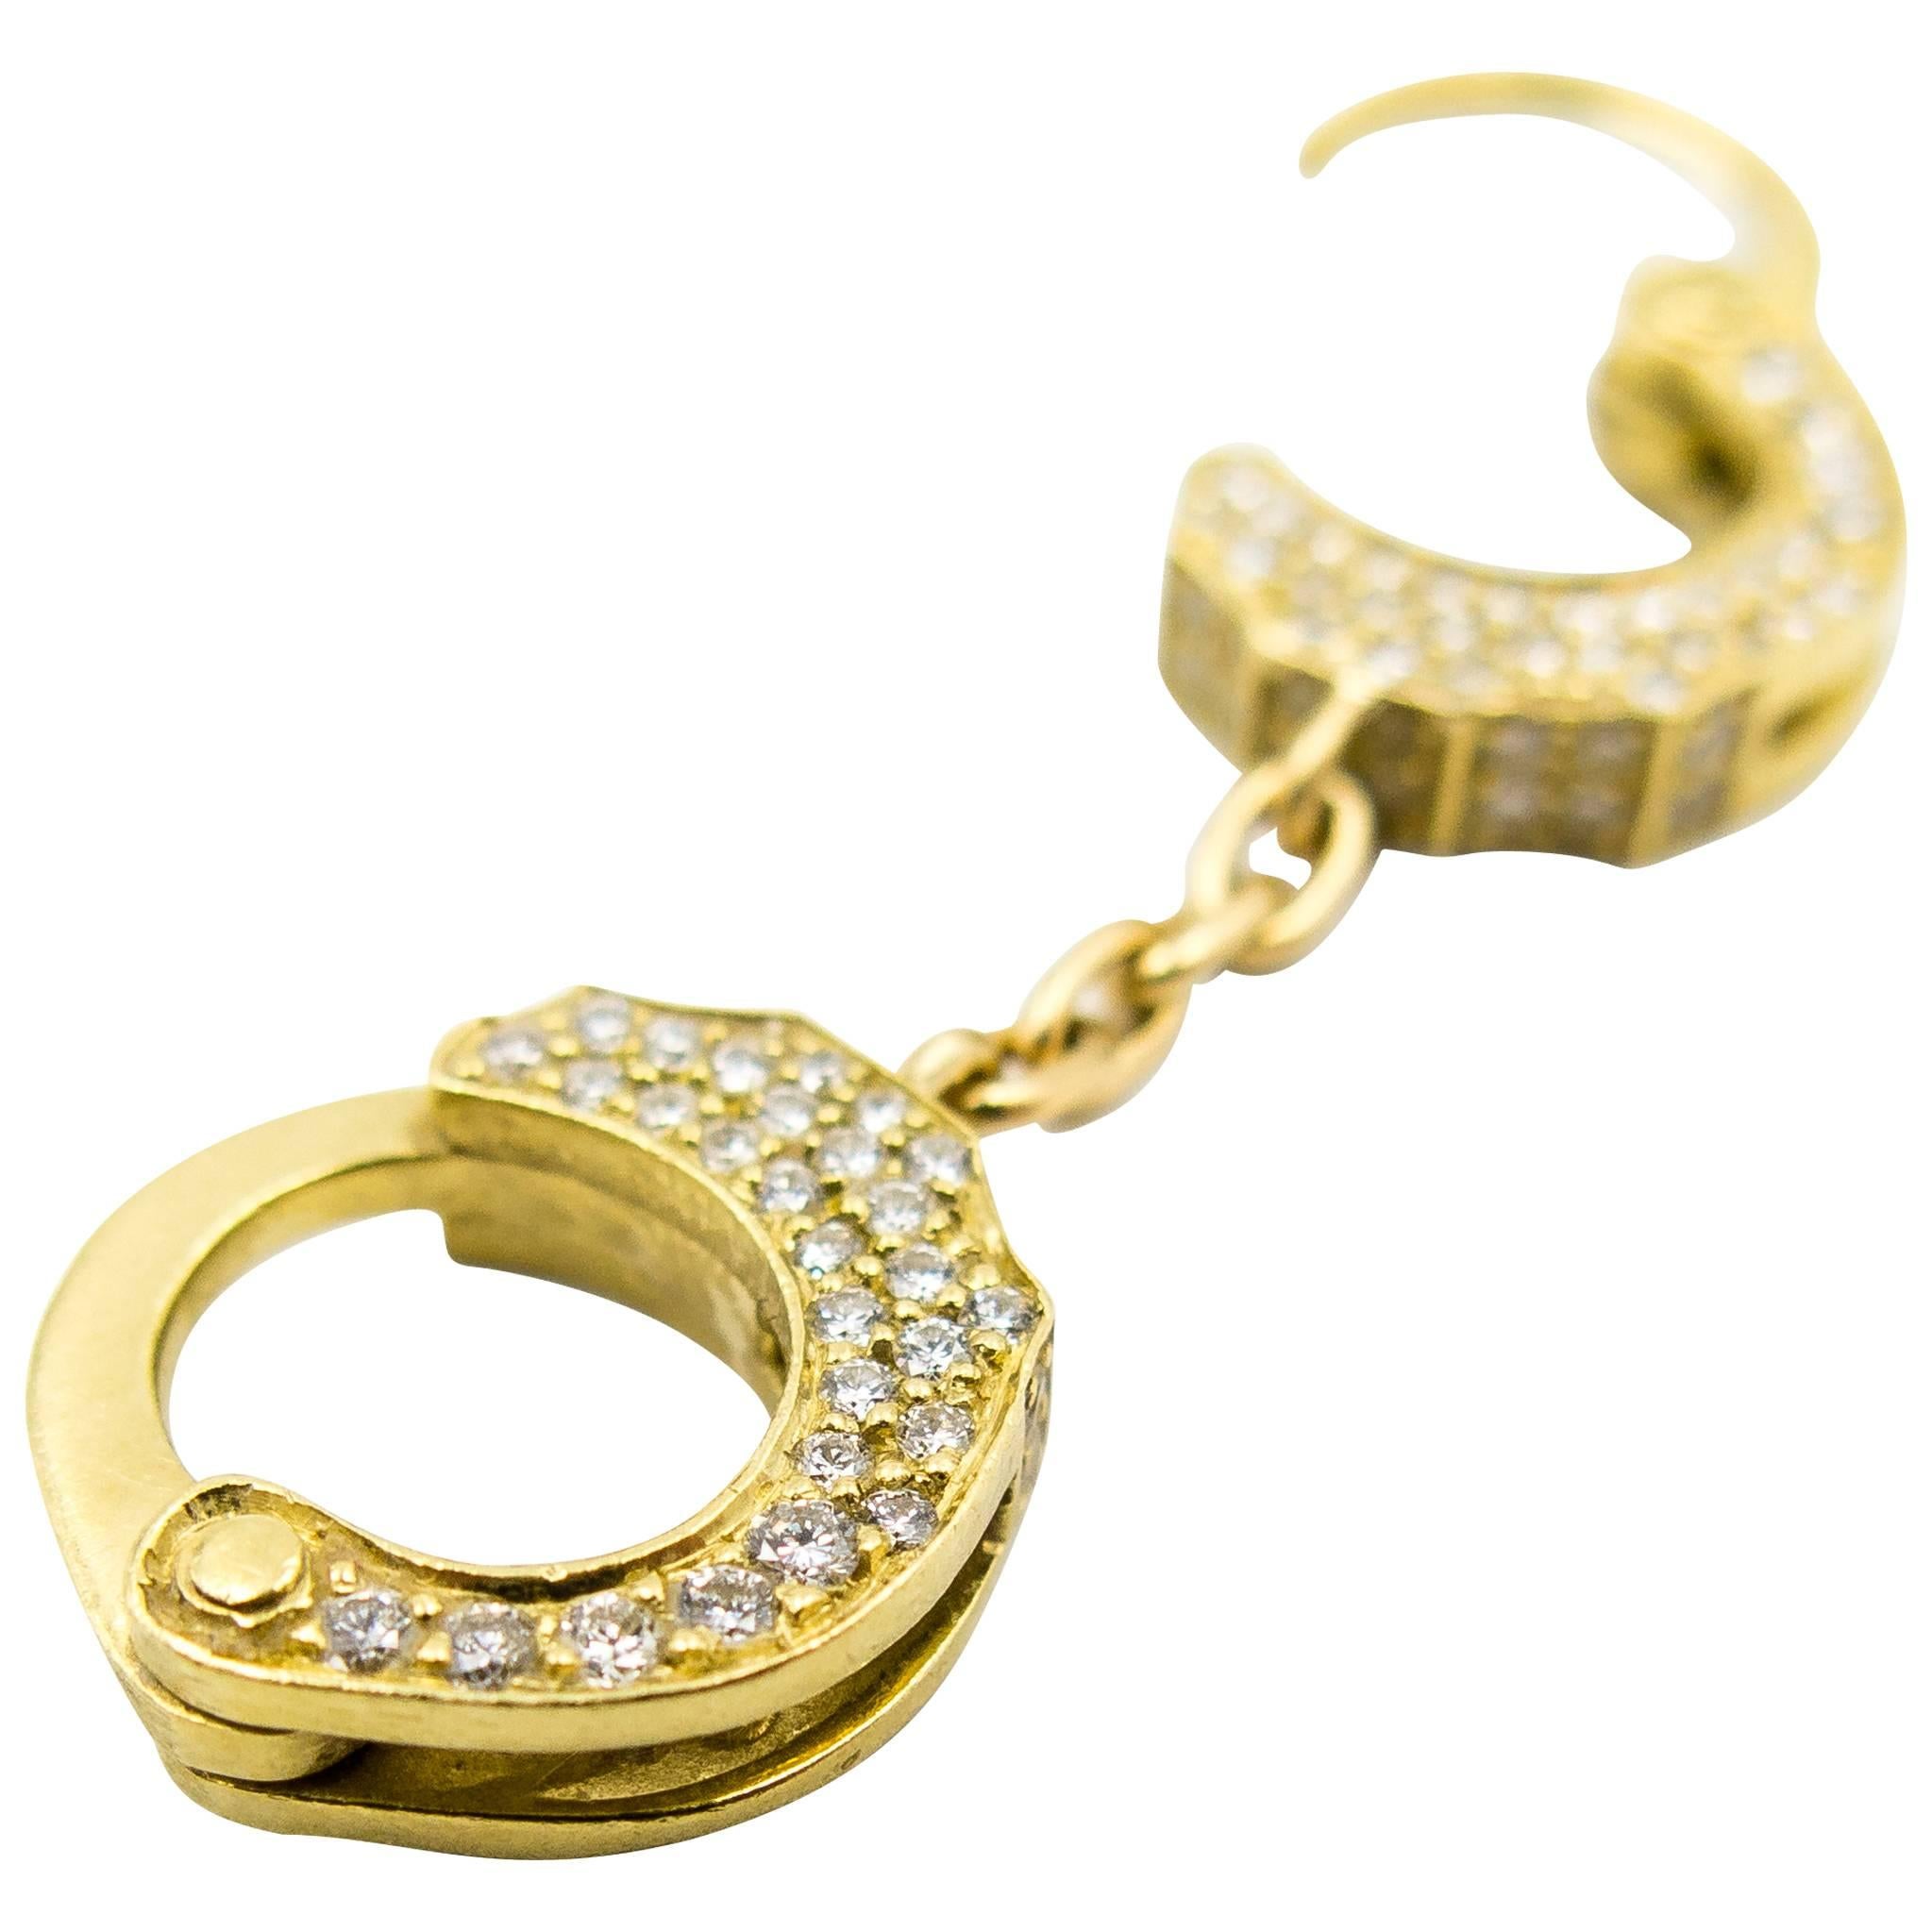 Unusual Diamond Gold Handcuff Pendant